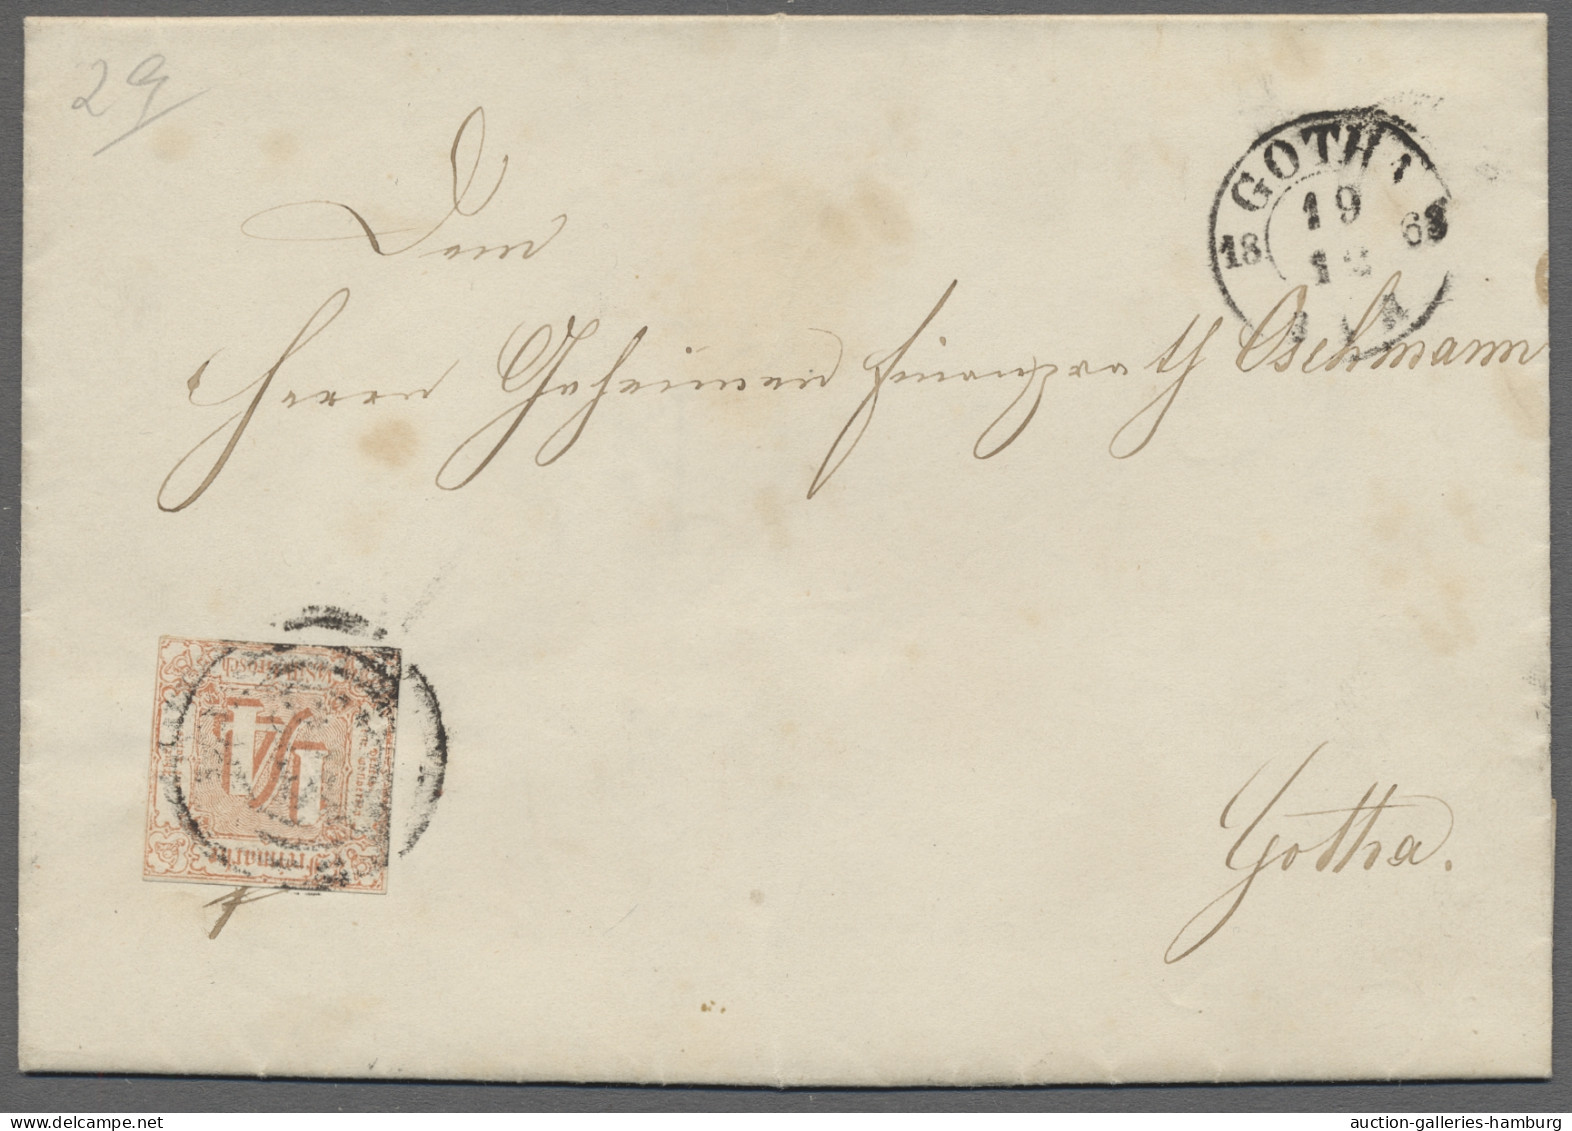 o/Briefstück/Brf./* Thurn & Taxis - Marken und Briefe: 1822-1867, auf selbstgestalteten Blättern in